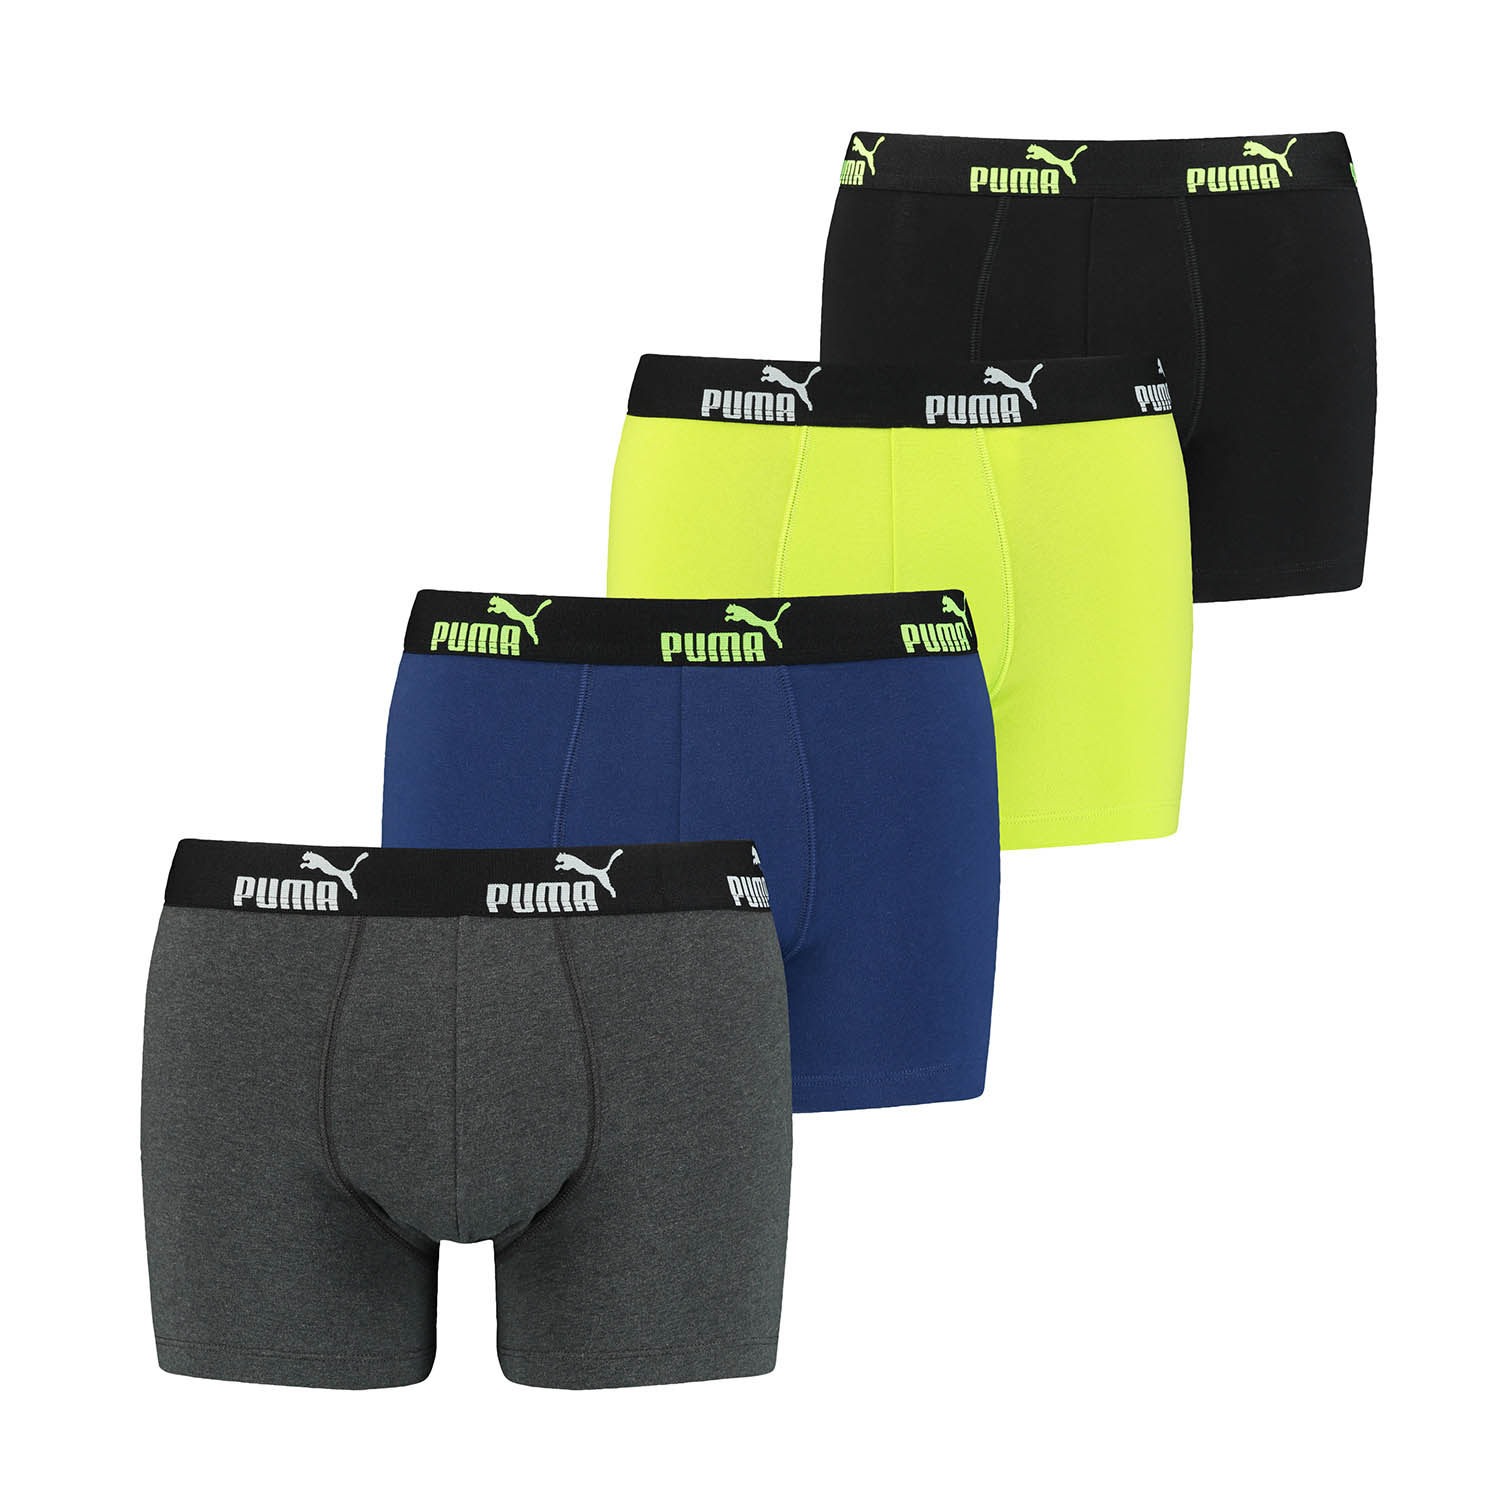 PUMA 8 er Pack Boxer Boxershorts Herren Unterwäsche sportliche Retro Pants, Farbe:Grey Melange/Yellow, Bekleidungsgröße:M